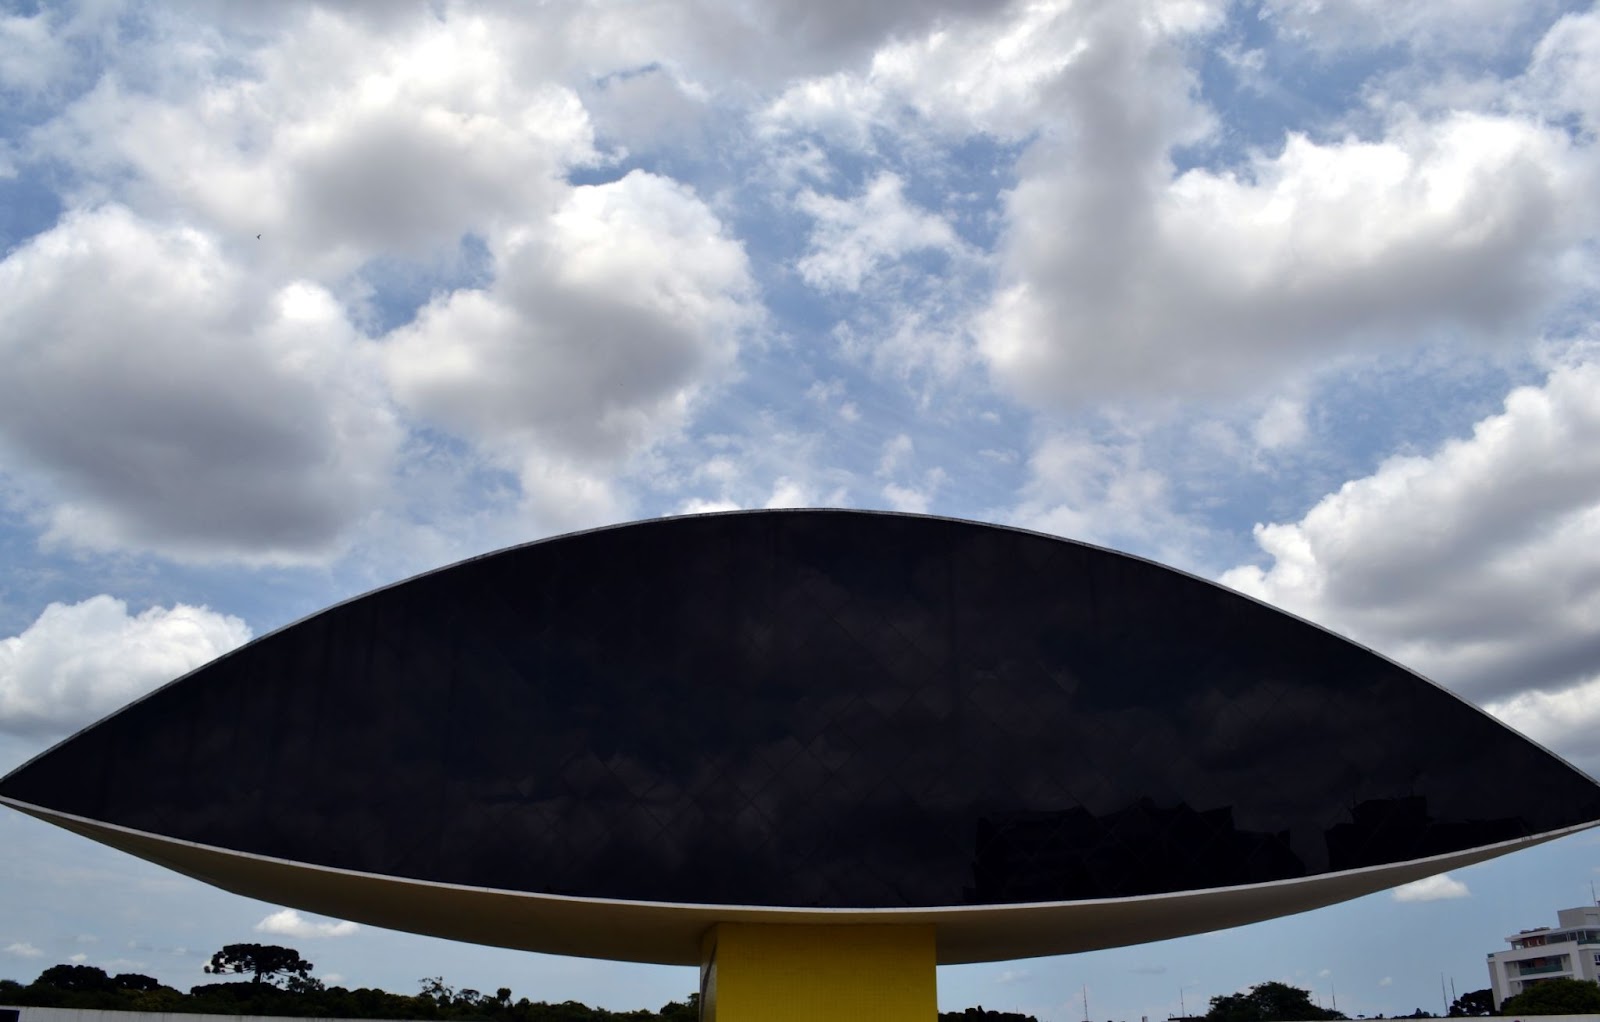 Foto de metade da fachada do Museu Oscar Niemeyer em Curitiba, mostrando apenas um lado da arquitetura em formato de olho.